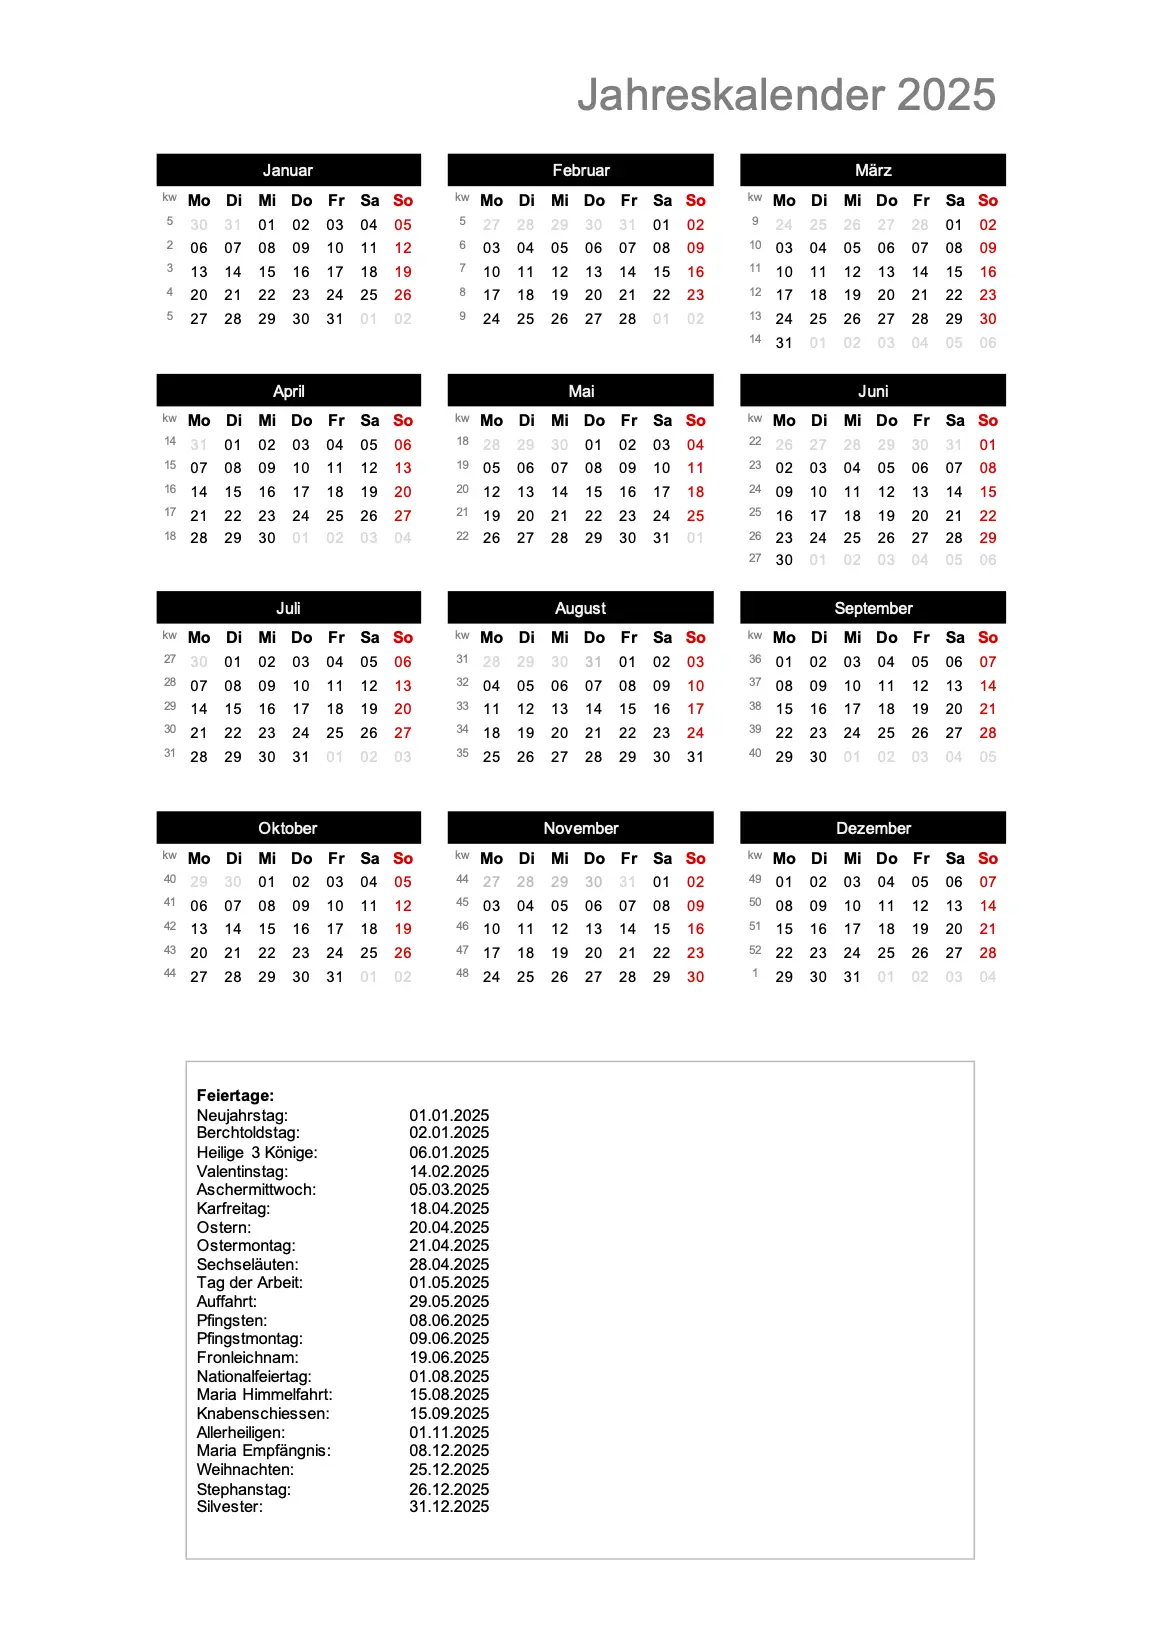 Jahreskalender 2025 im Hochformat
Download